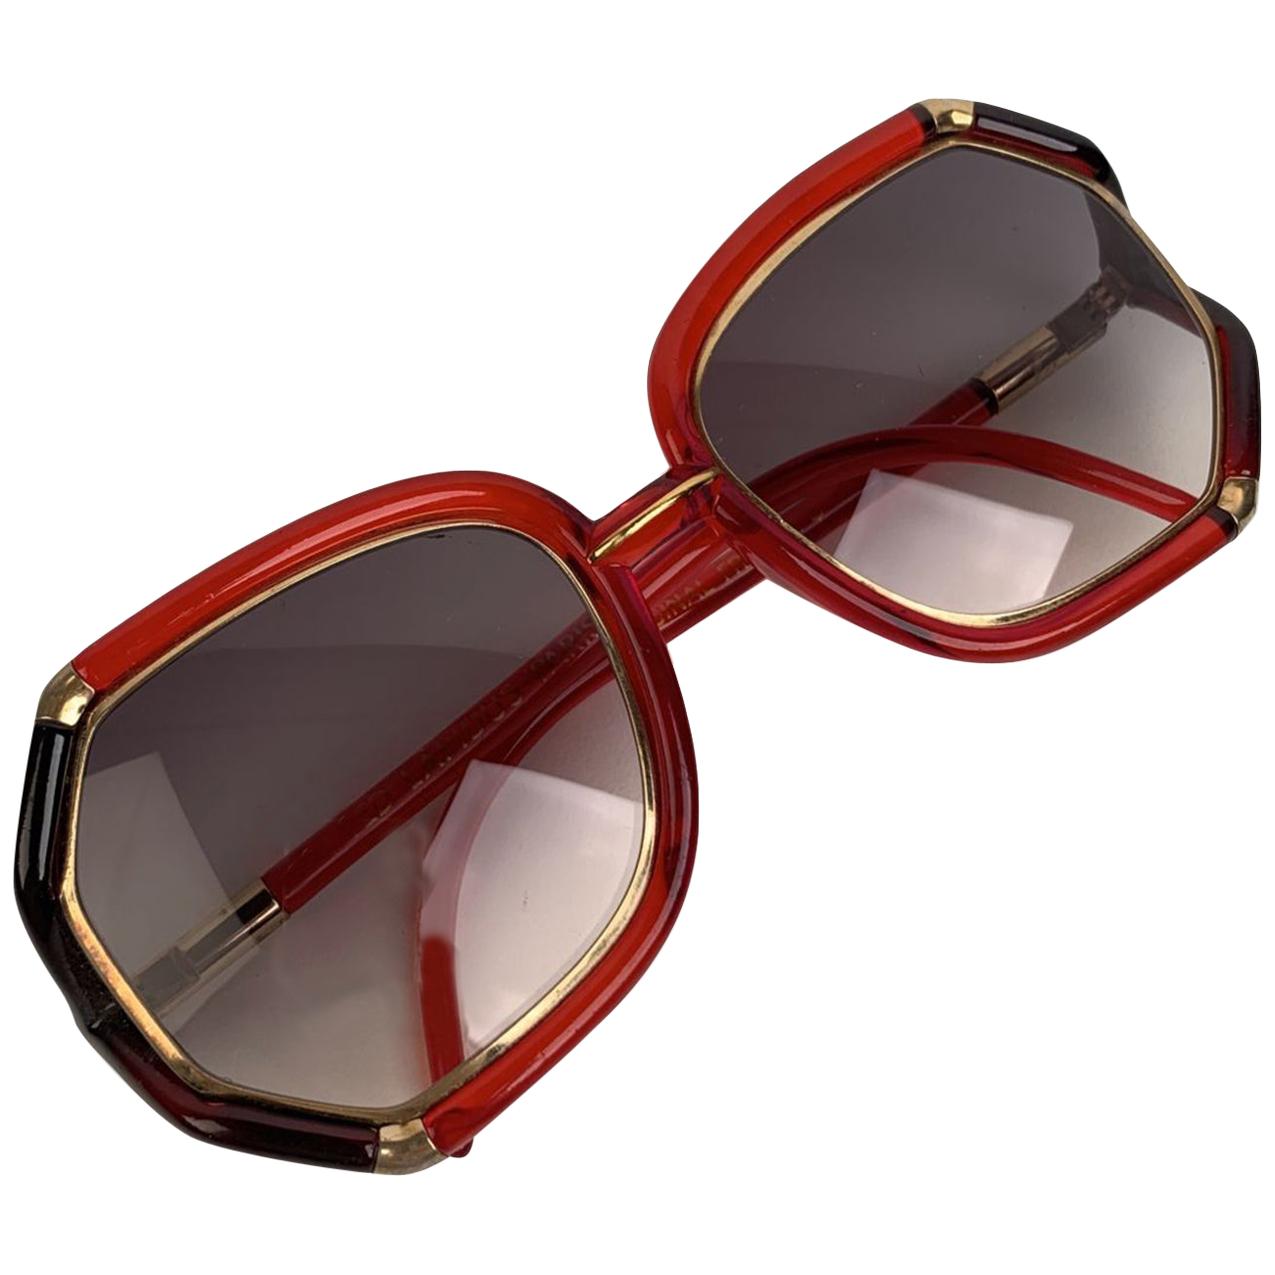 Ted Lapiudus Vintage Red Black Sunglasses TL10 56-16 135mm